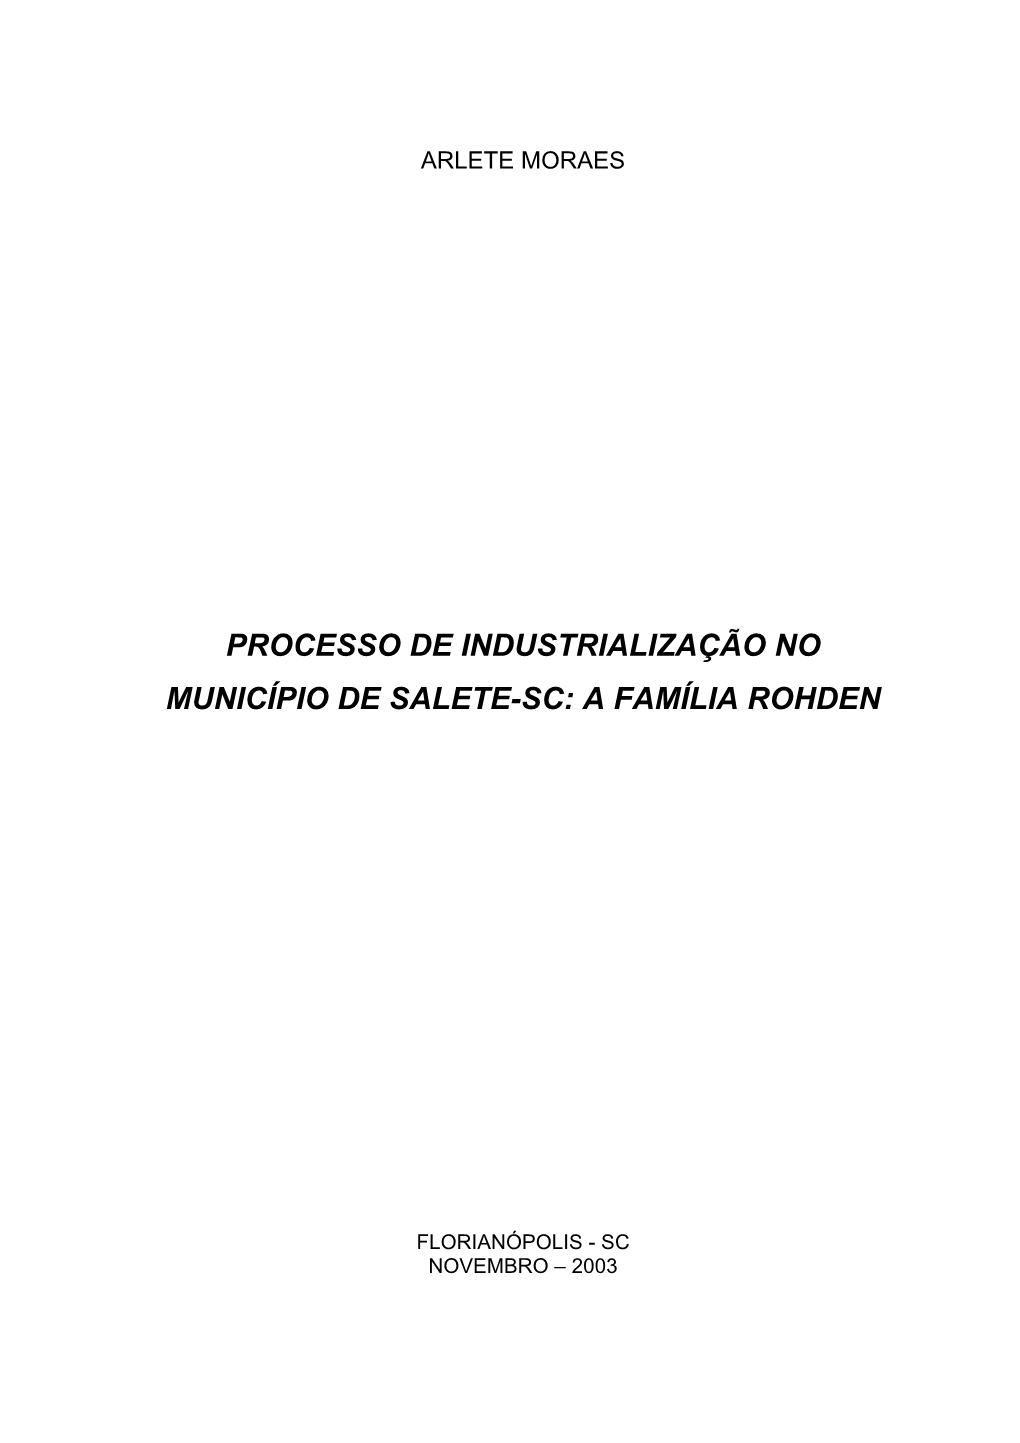 Processo De Industrialização No Município De Salete-Sc: a Família Rohden